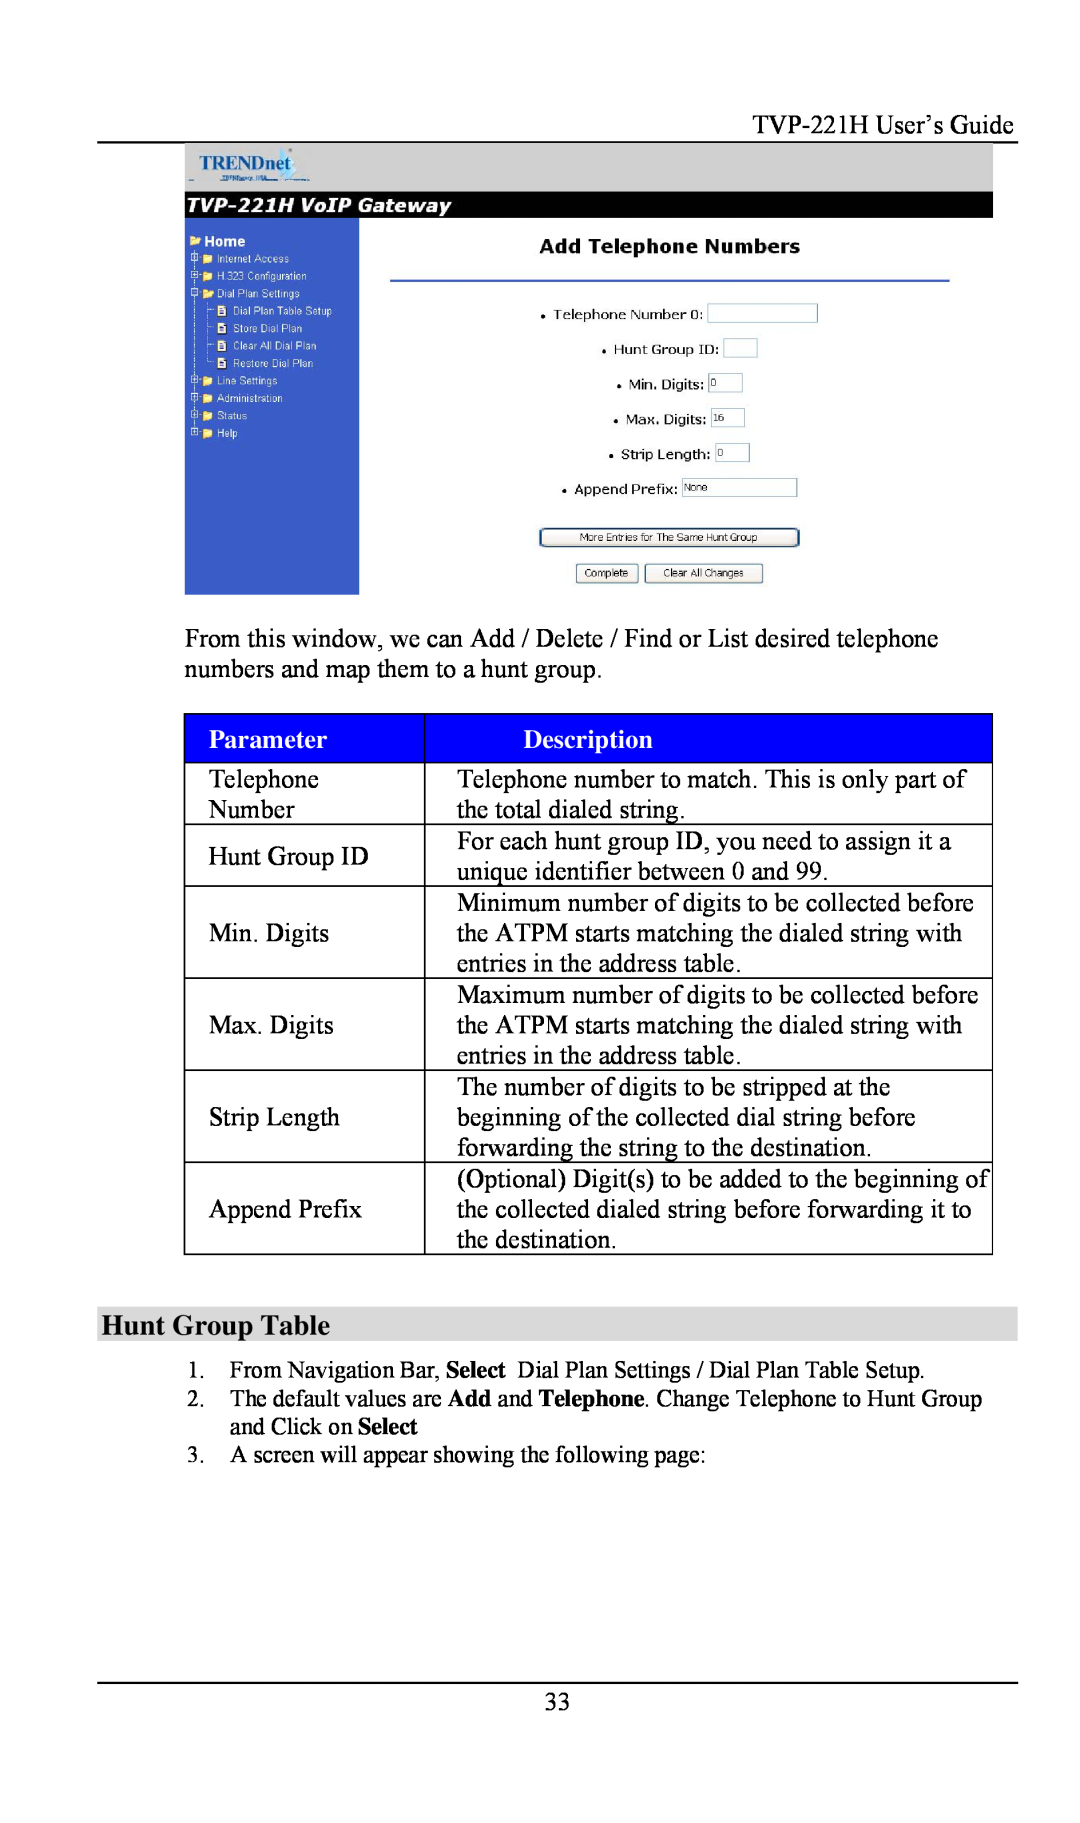 TRENDnet VoIP Gateway, TVP- 221H manual Hunt Group Table, Parameter, Description 